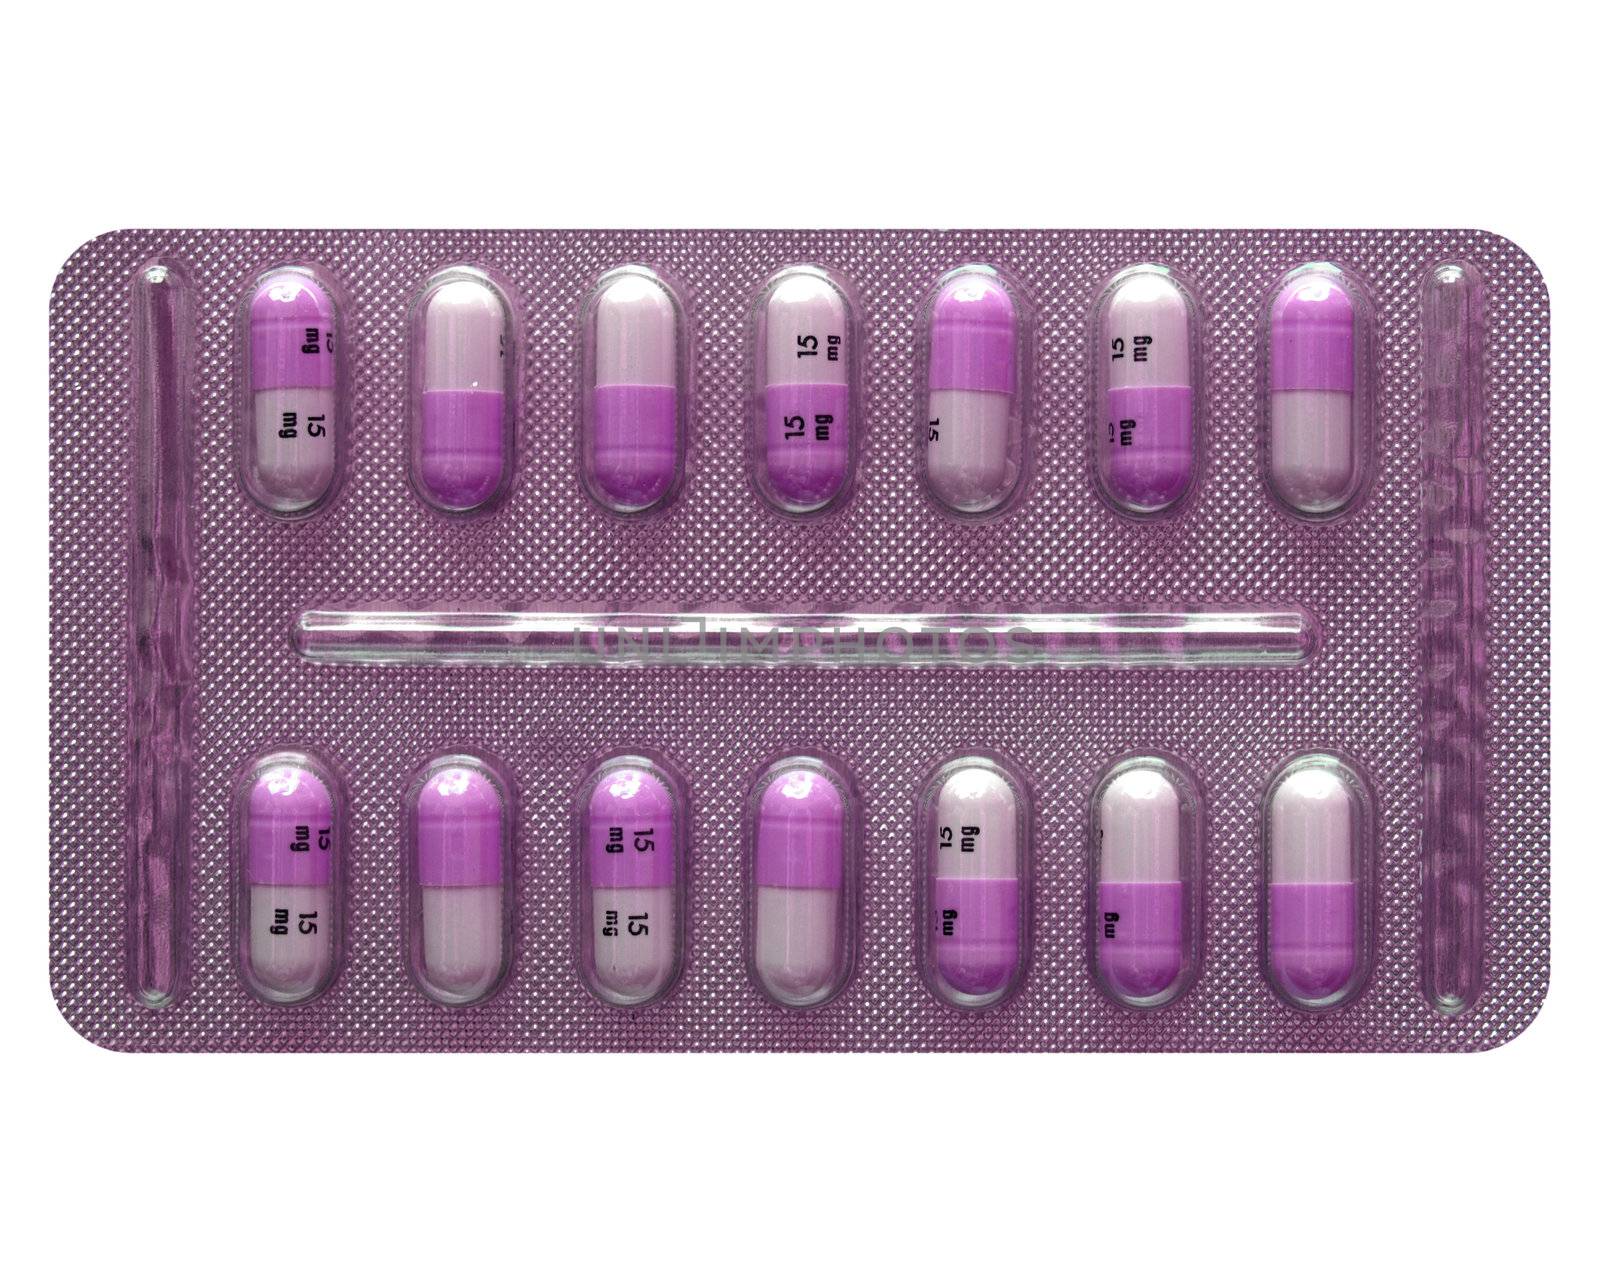 Pill by claudiodivizia